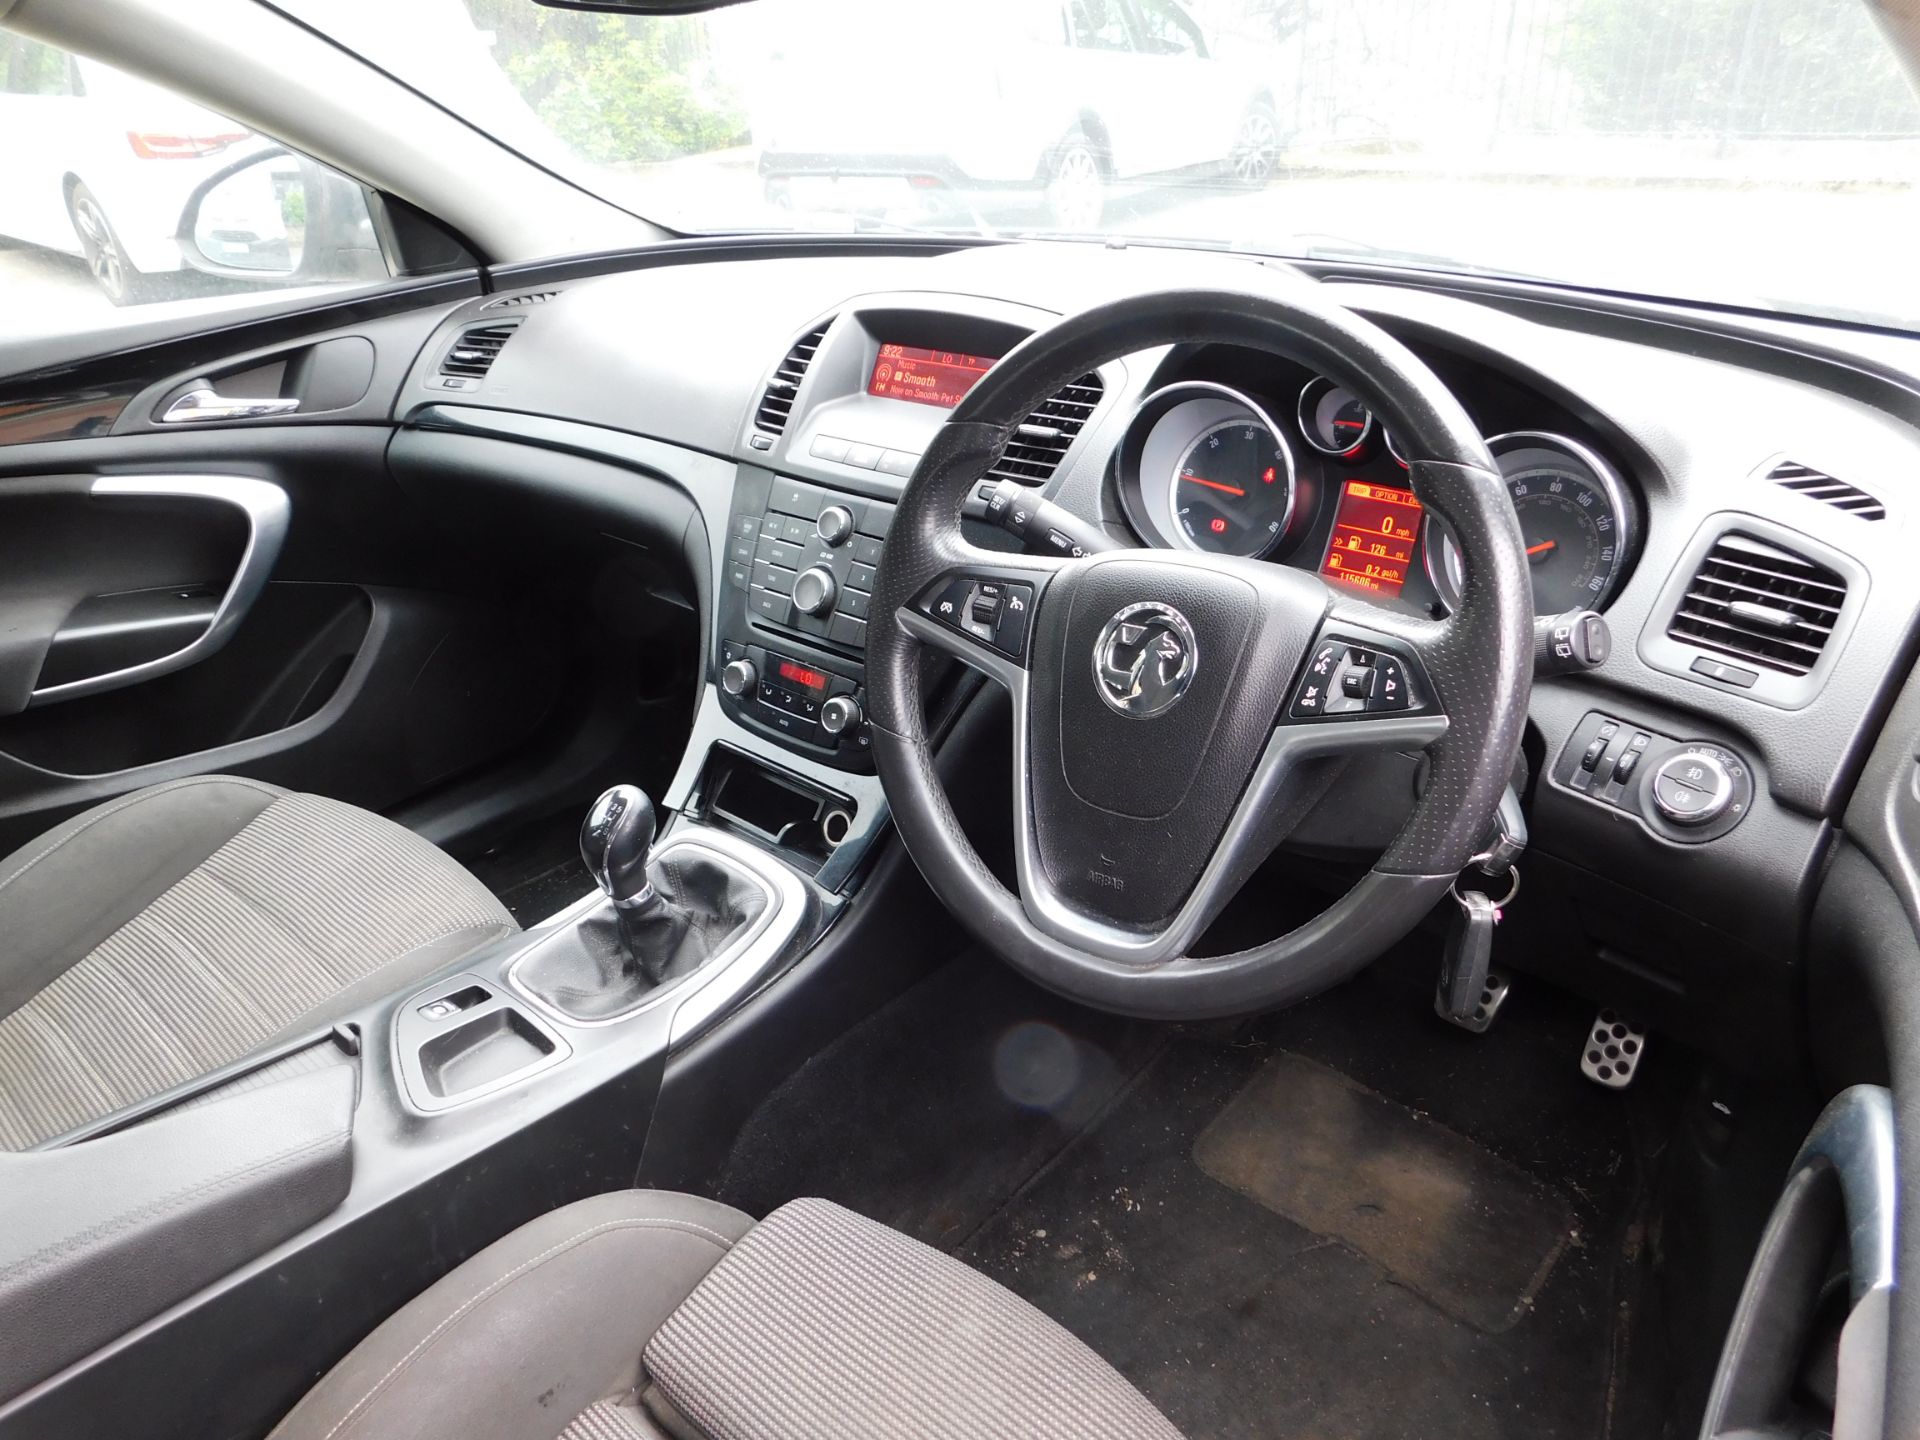 Vauxhall Insignia SRI 2.0CDTI five door hatchback, - Image 12 of 16